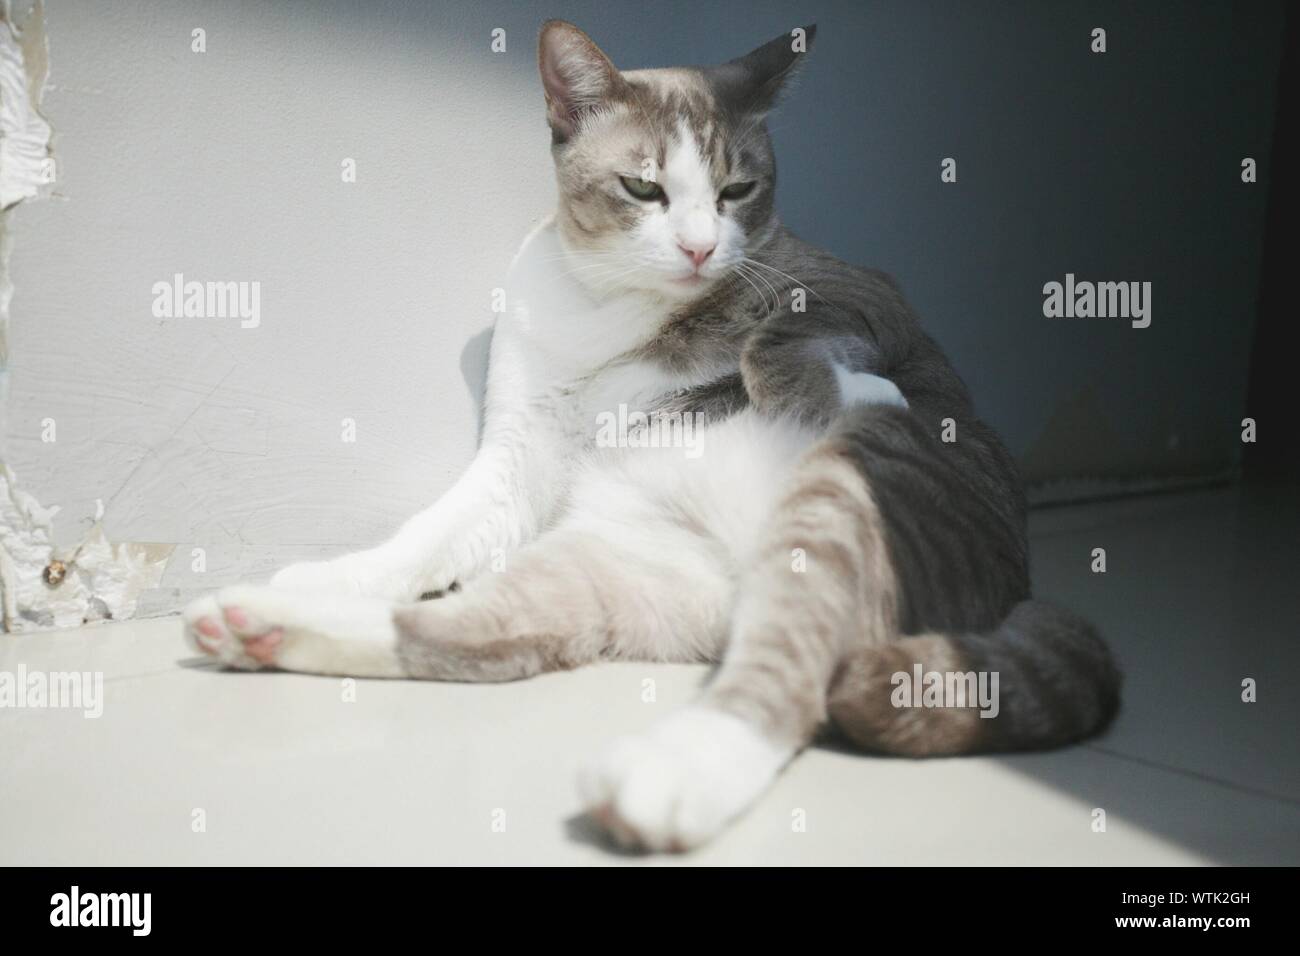 Katze kratzt beim Sitzen auf dem Boden Stockfotografie - Alamy